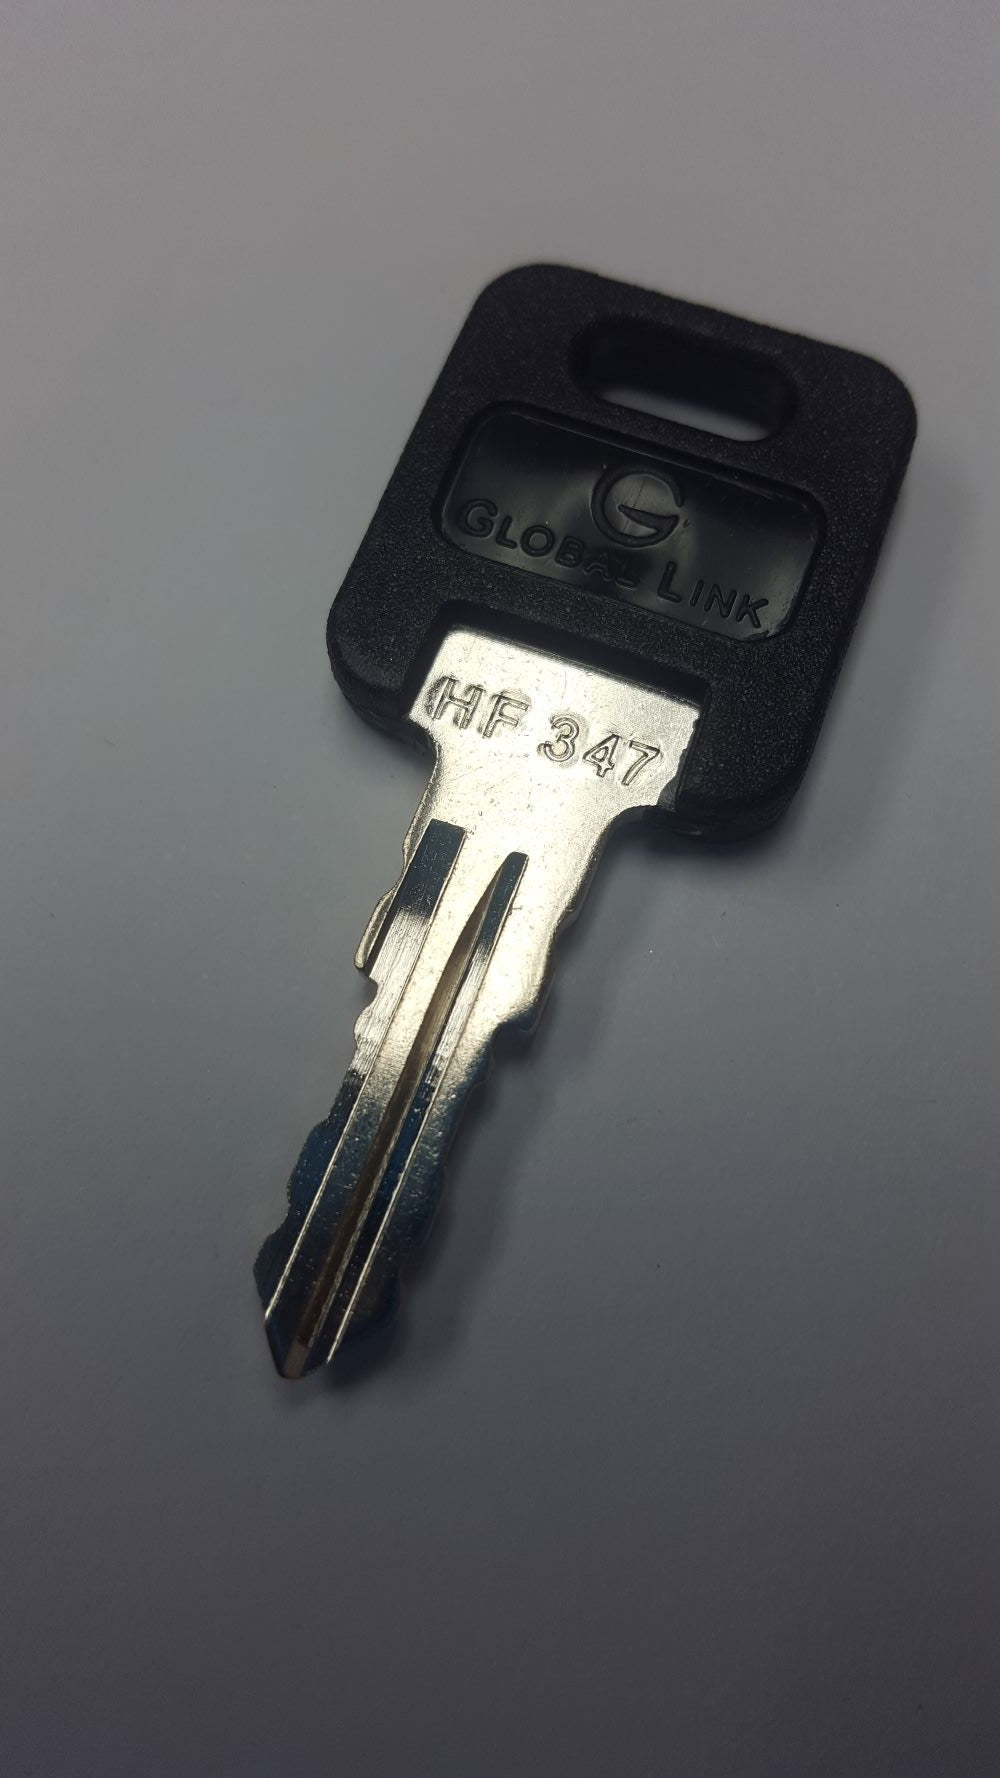 CPG KEY-HF-347 Pre-cut Stamped FIC Replacemnt HF347 Key